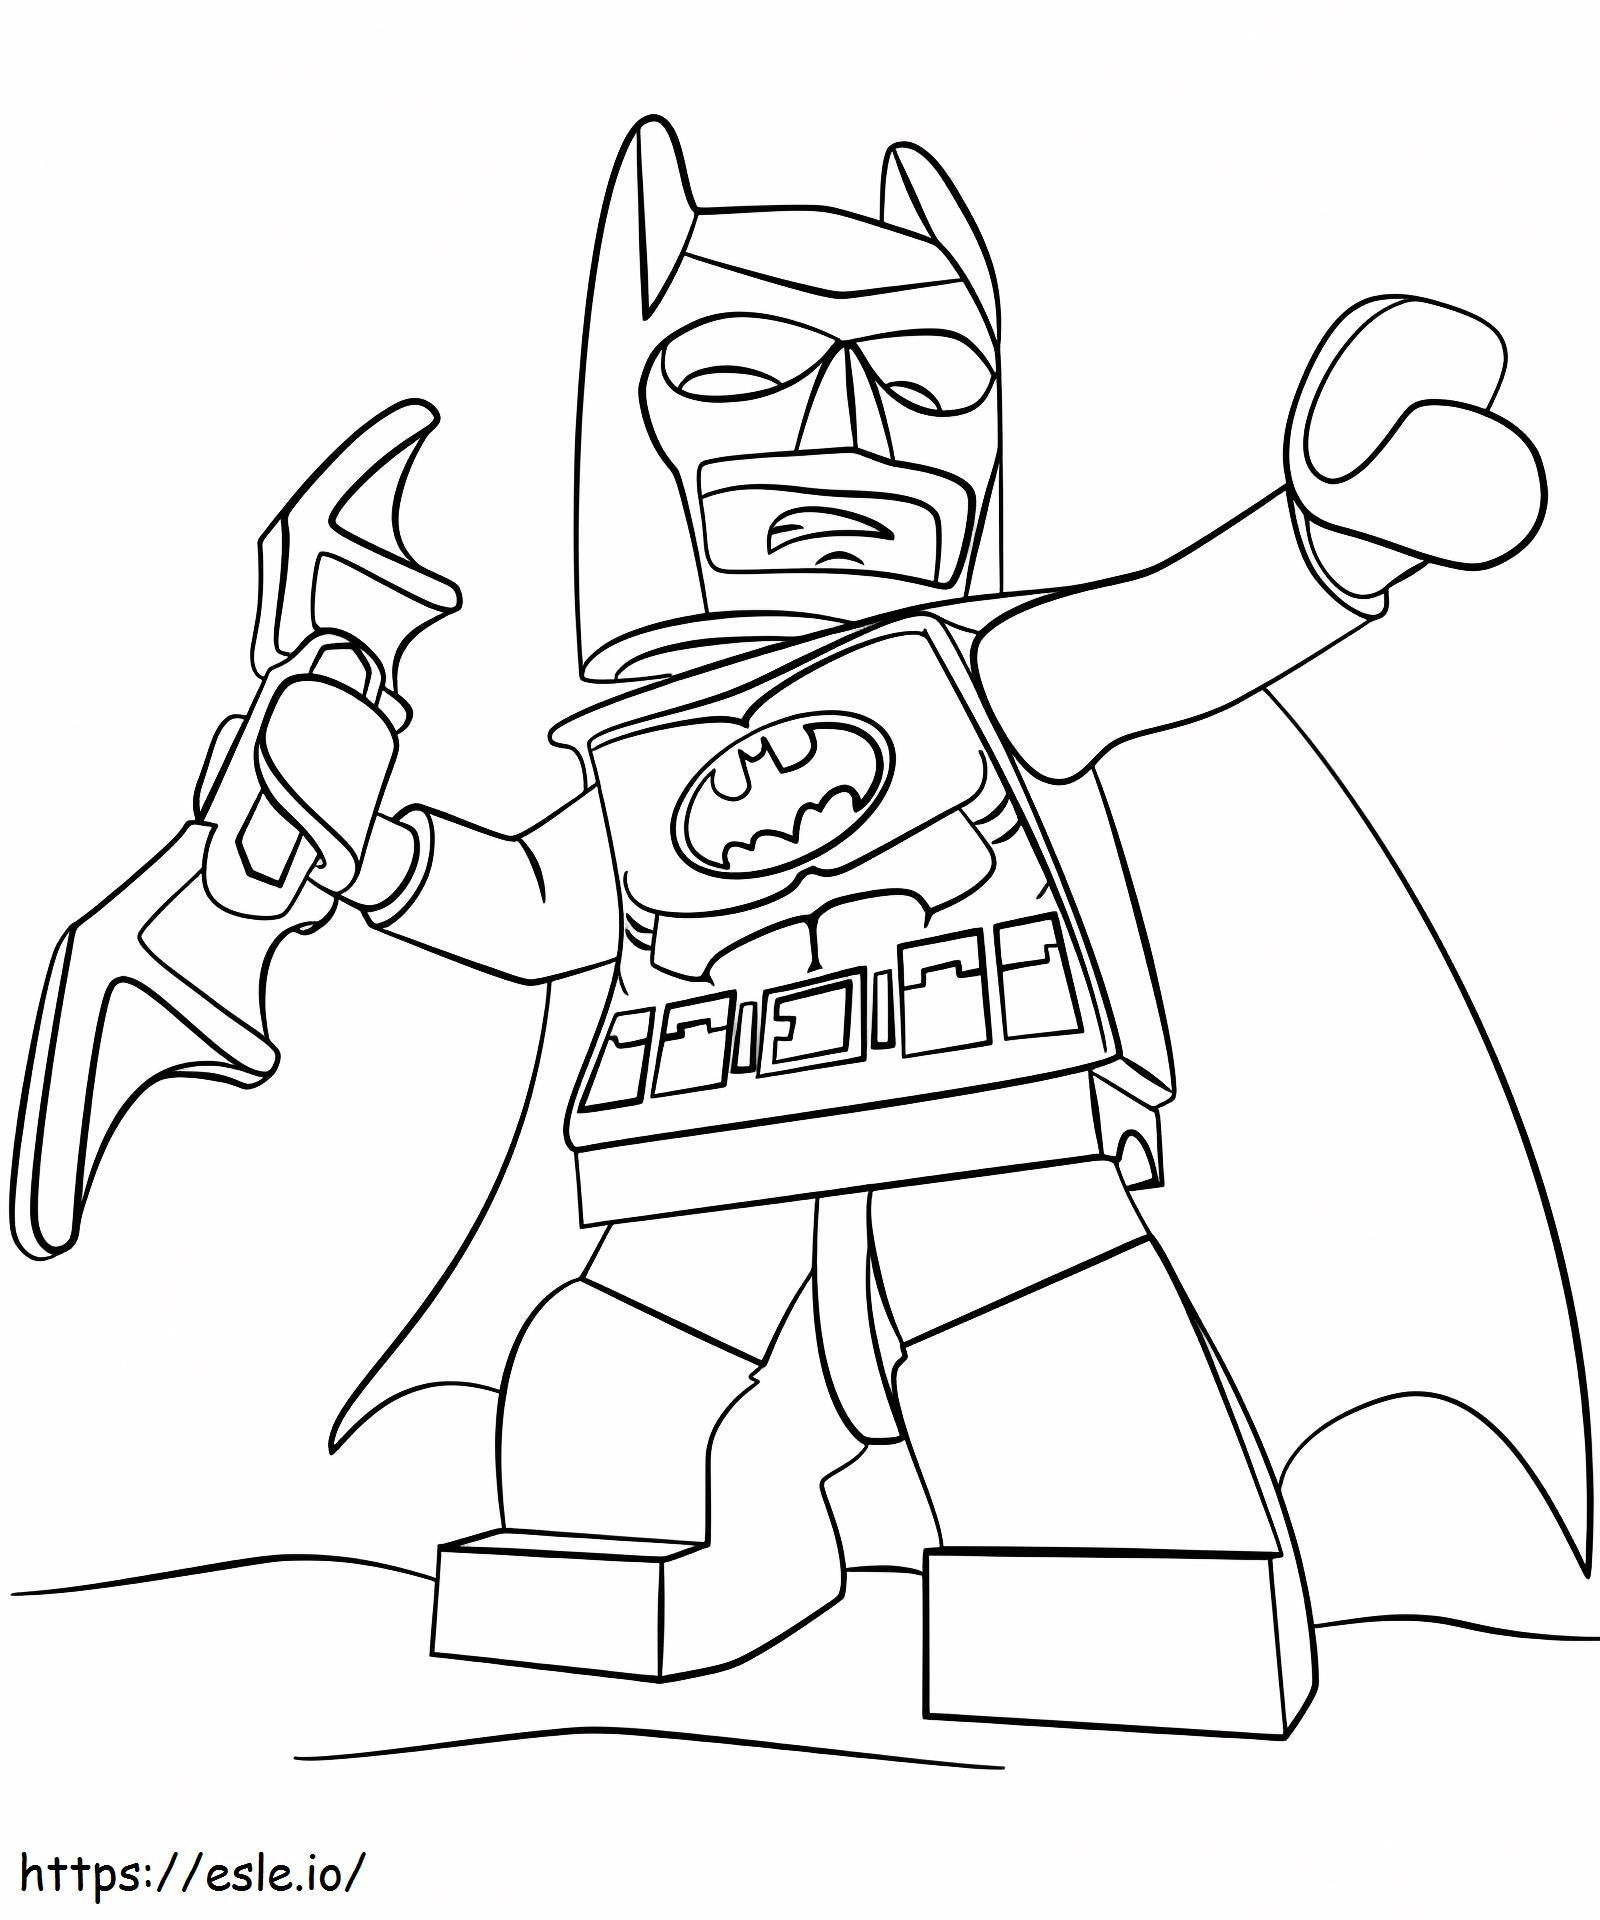 Coloriage  Batman Lego A4 à imprimer dessin